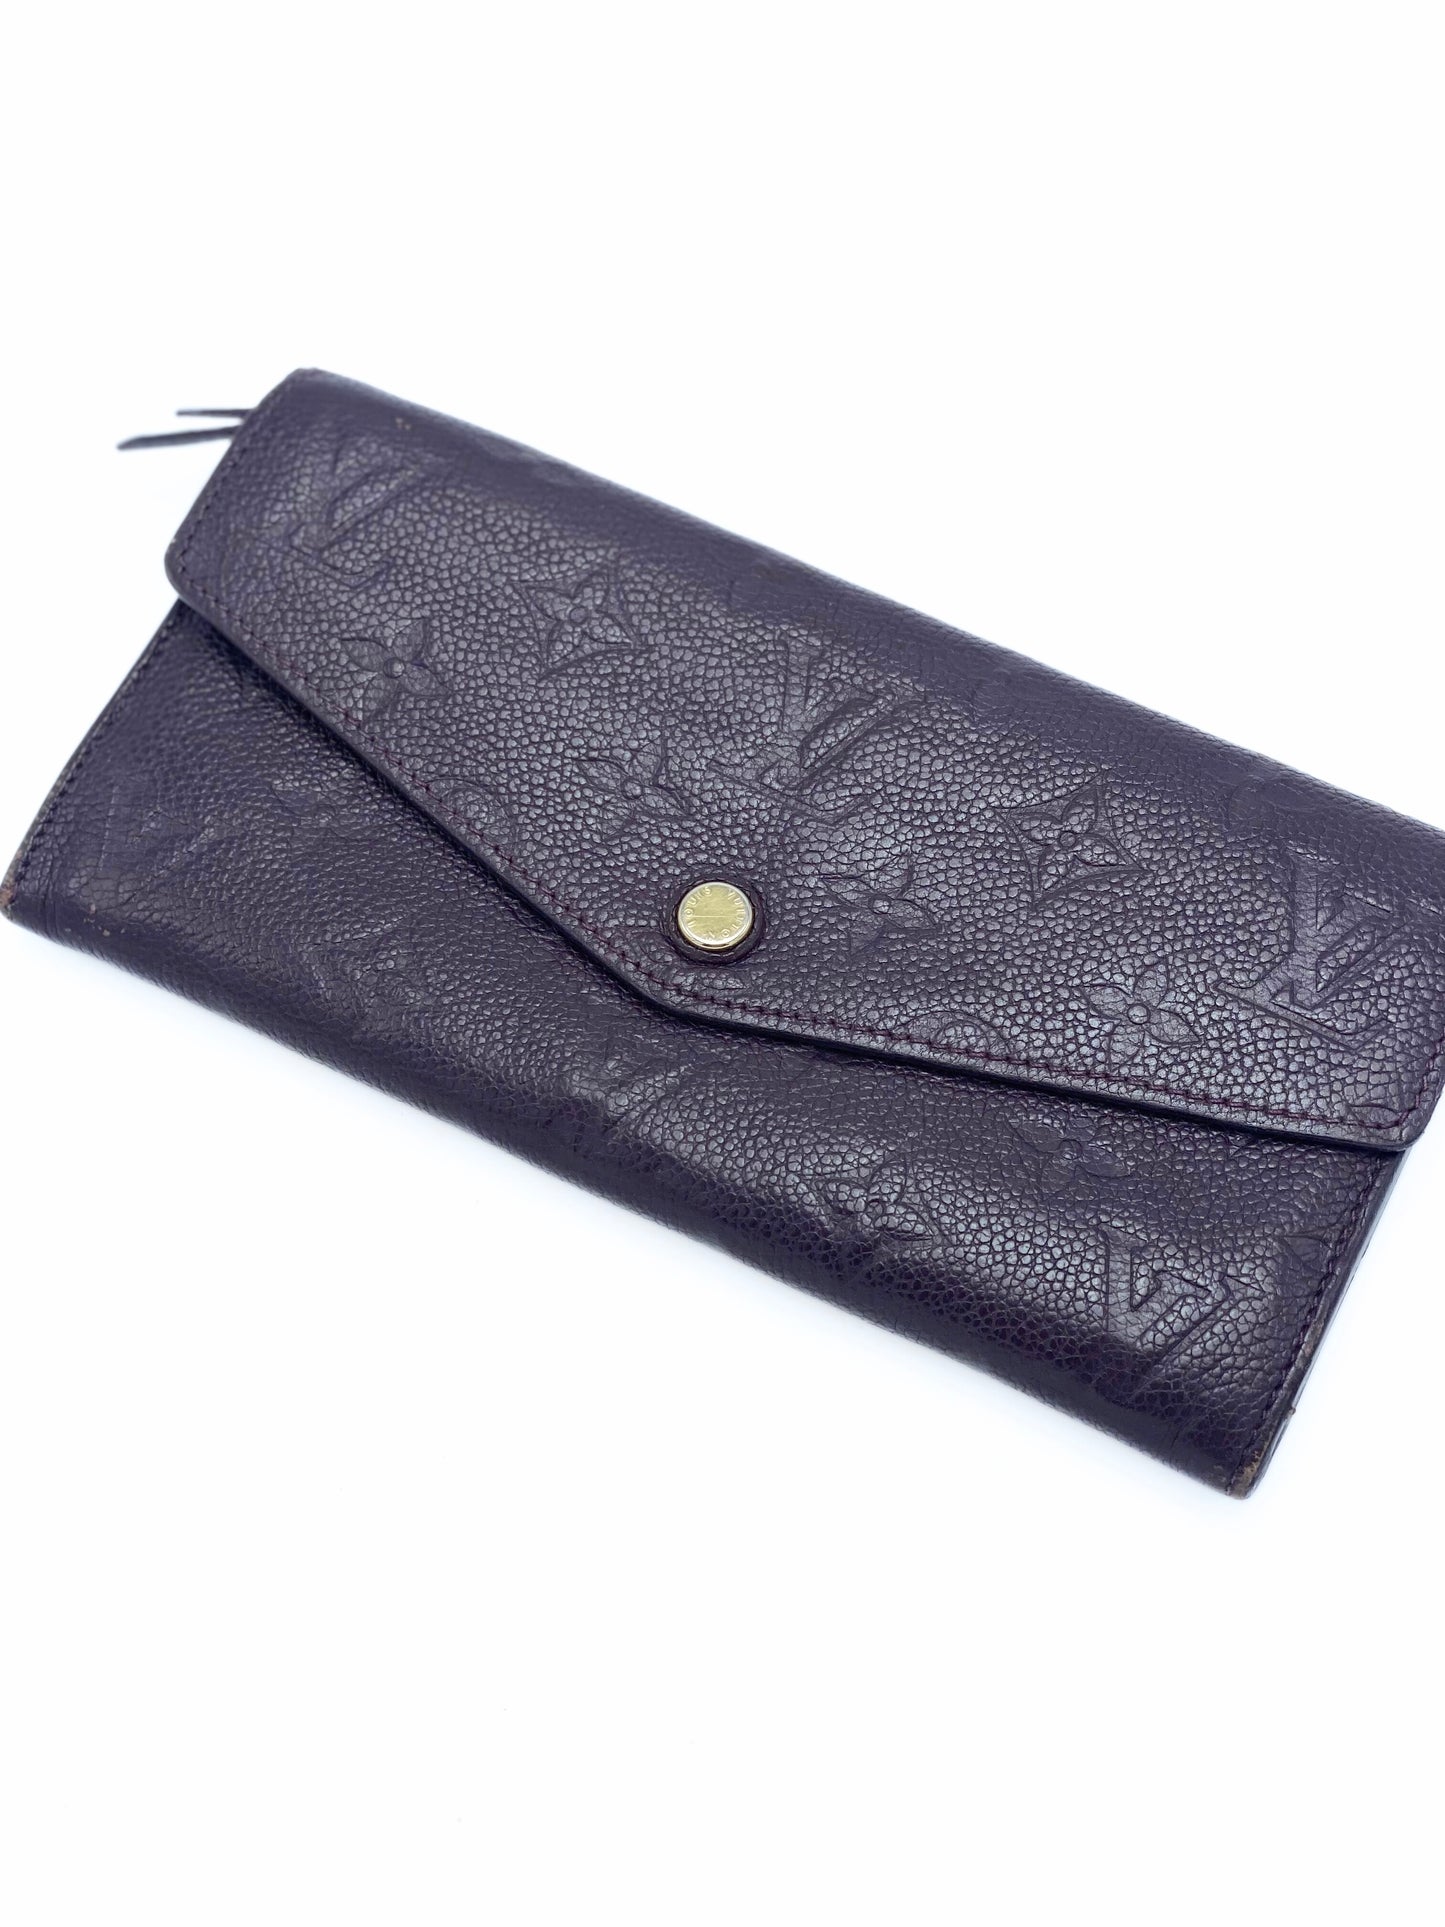 Billetera Louis Vuitton Empreinte Leather